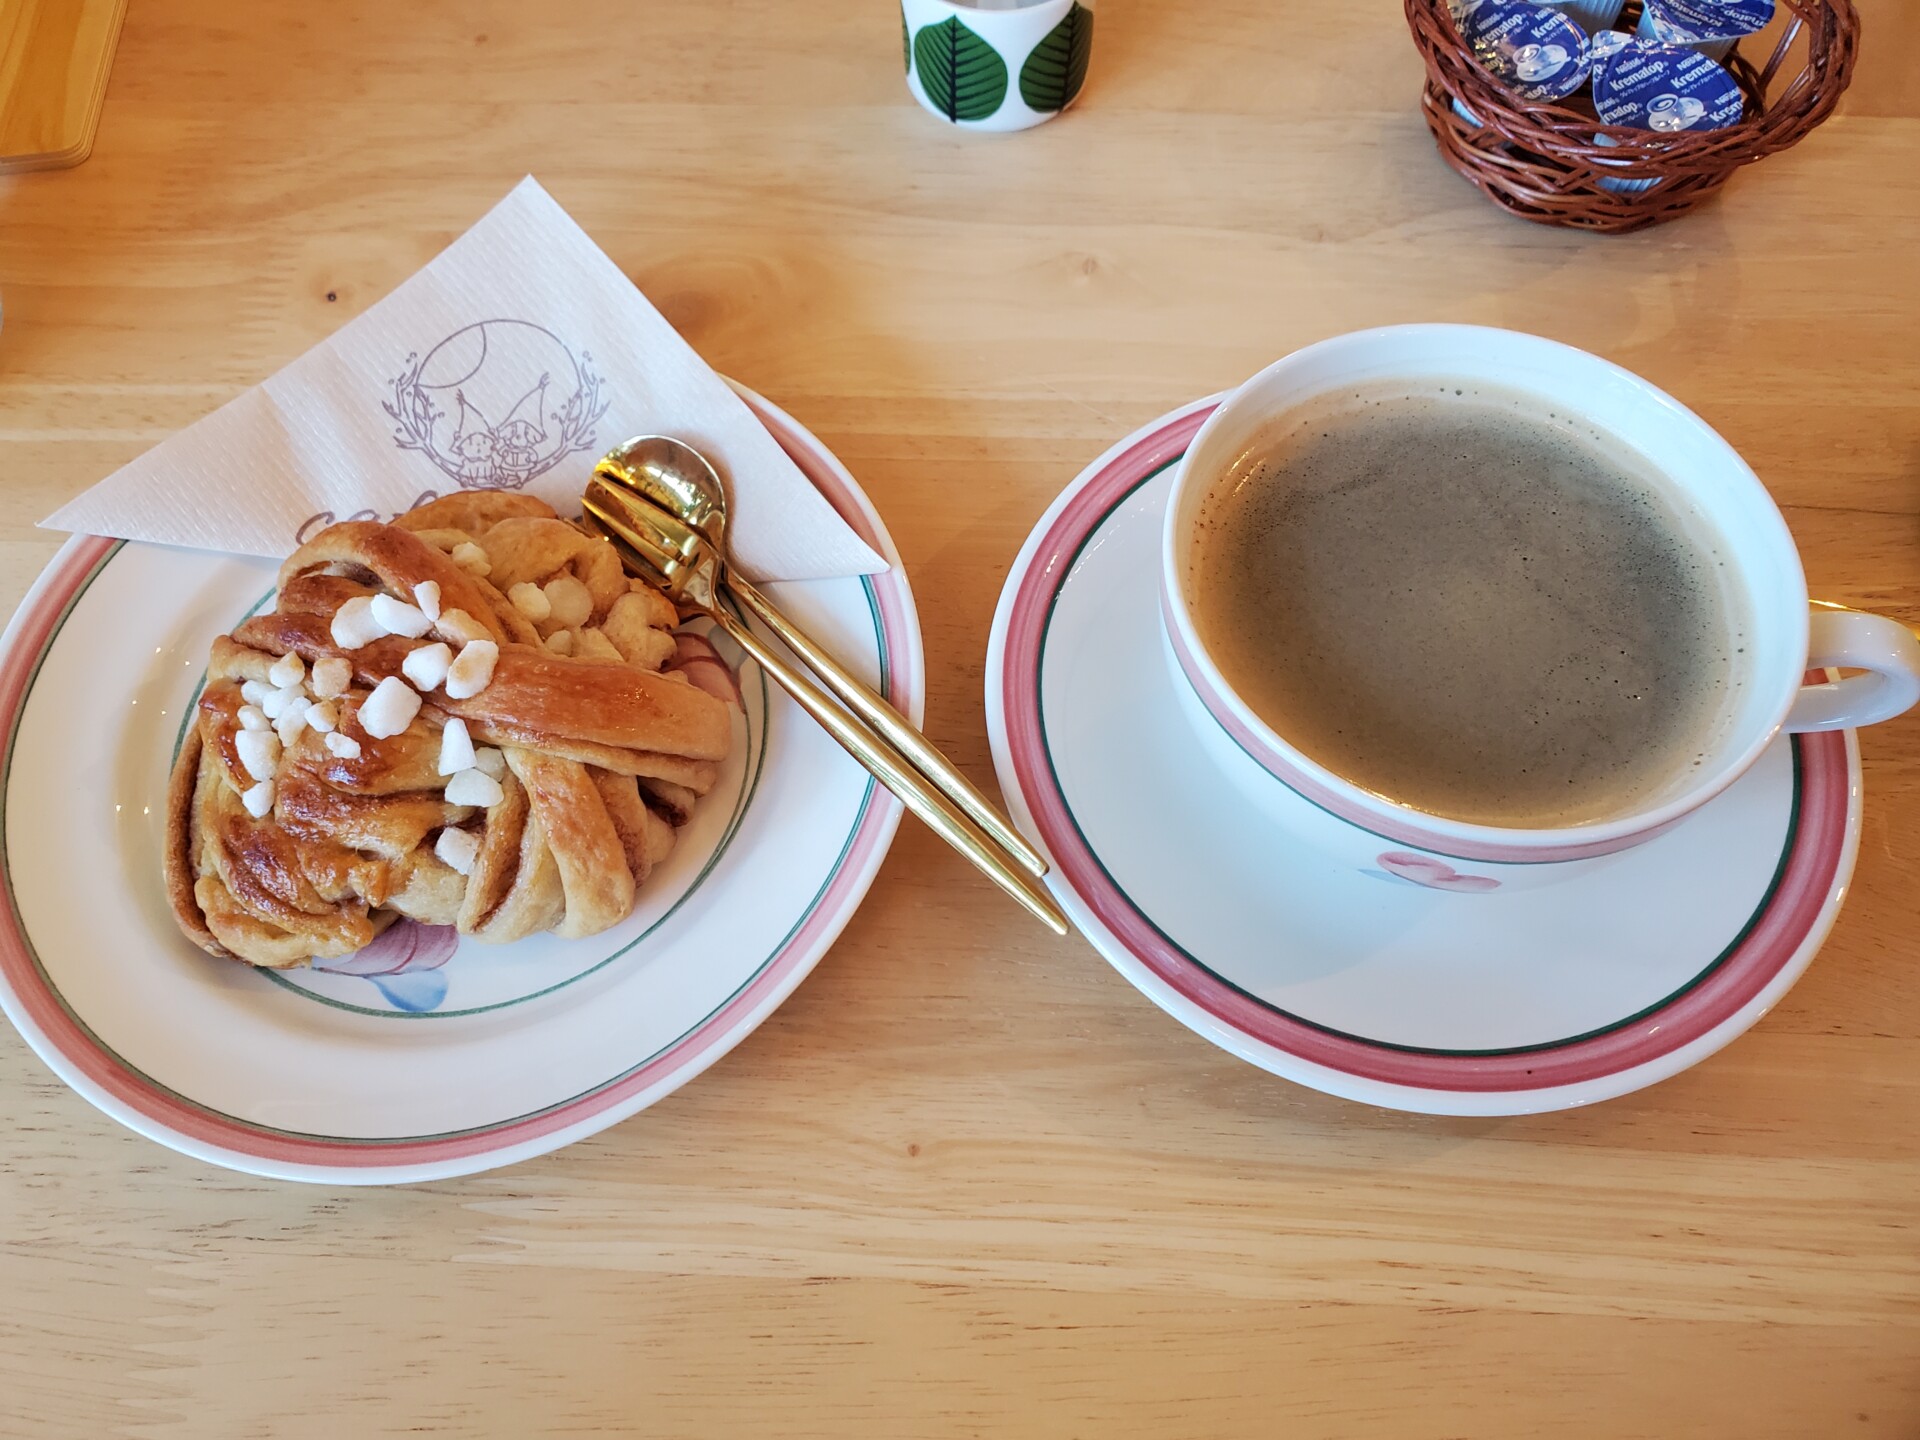 Cafe måne、スウェーデンのシナモンロール「カネルブッレ」とコーヒー